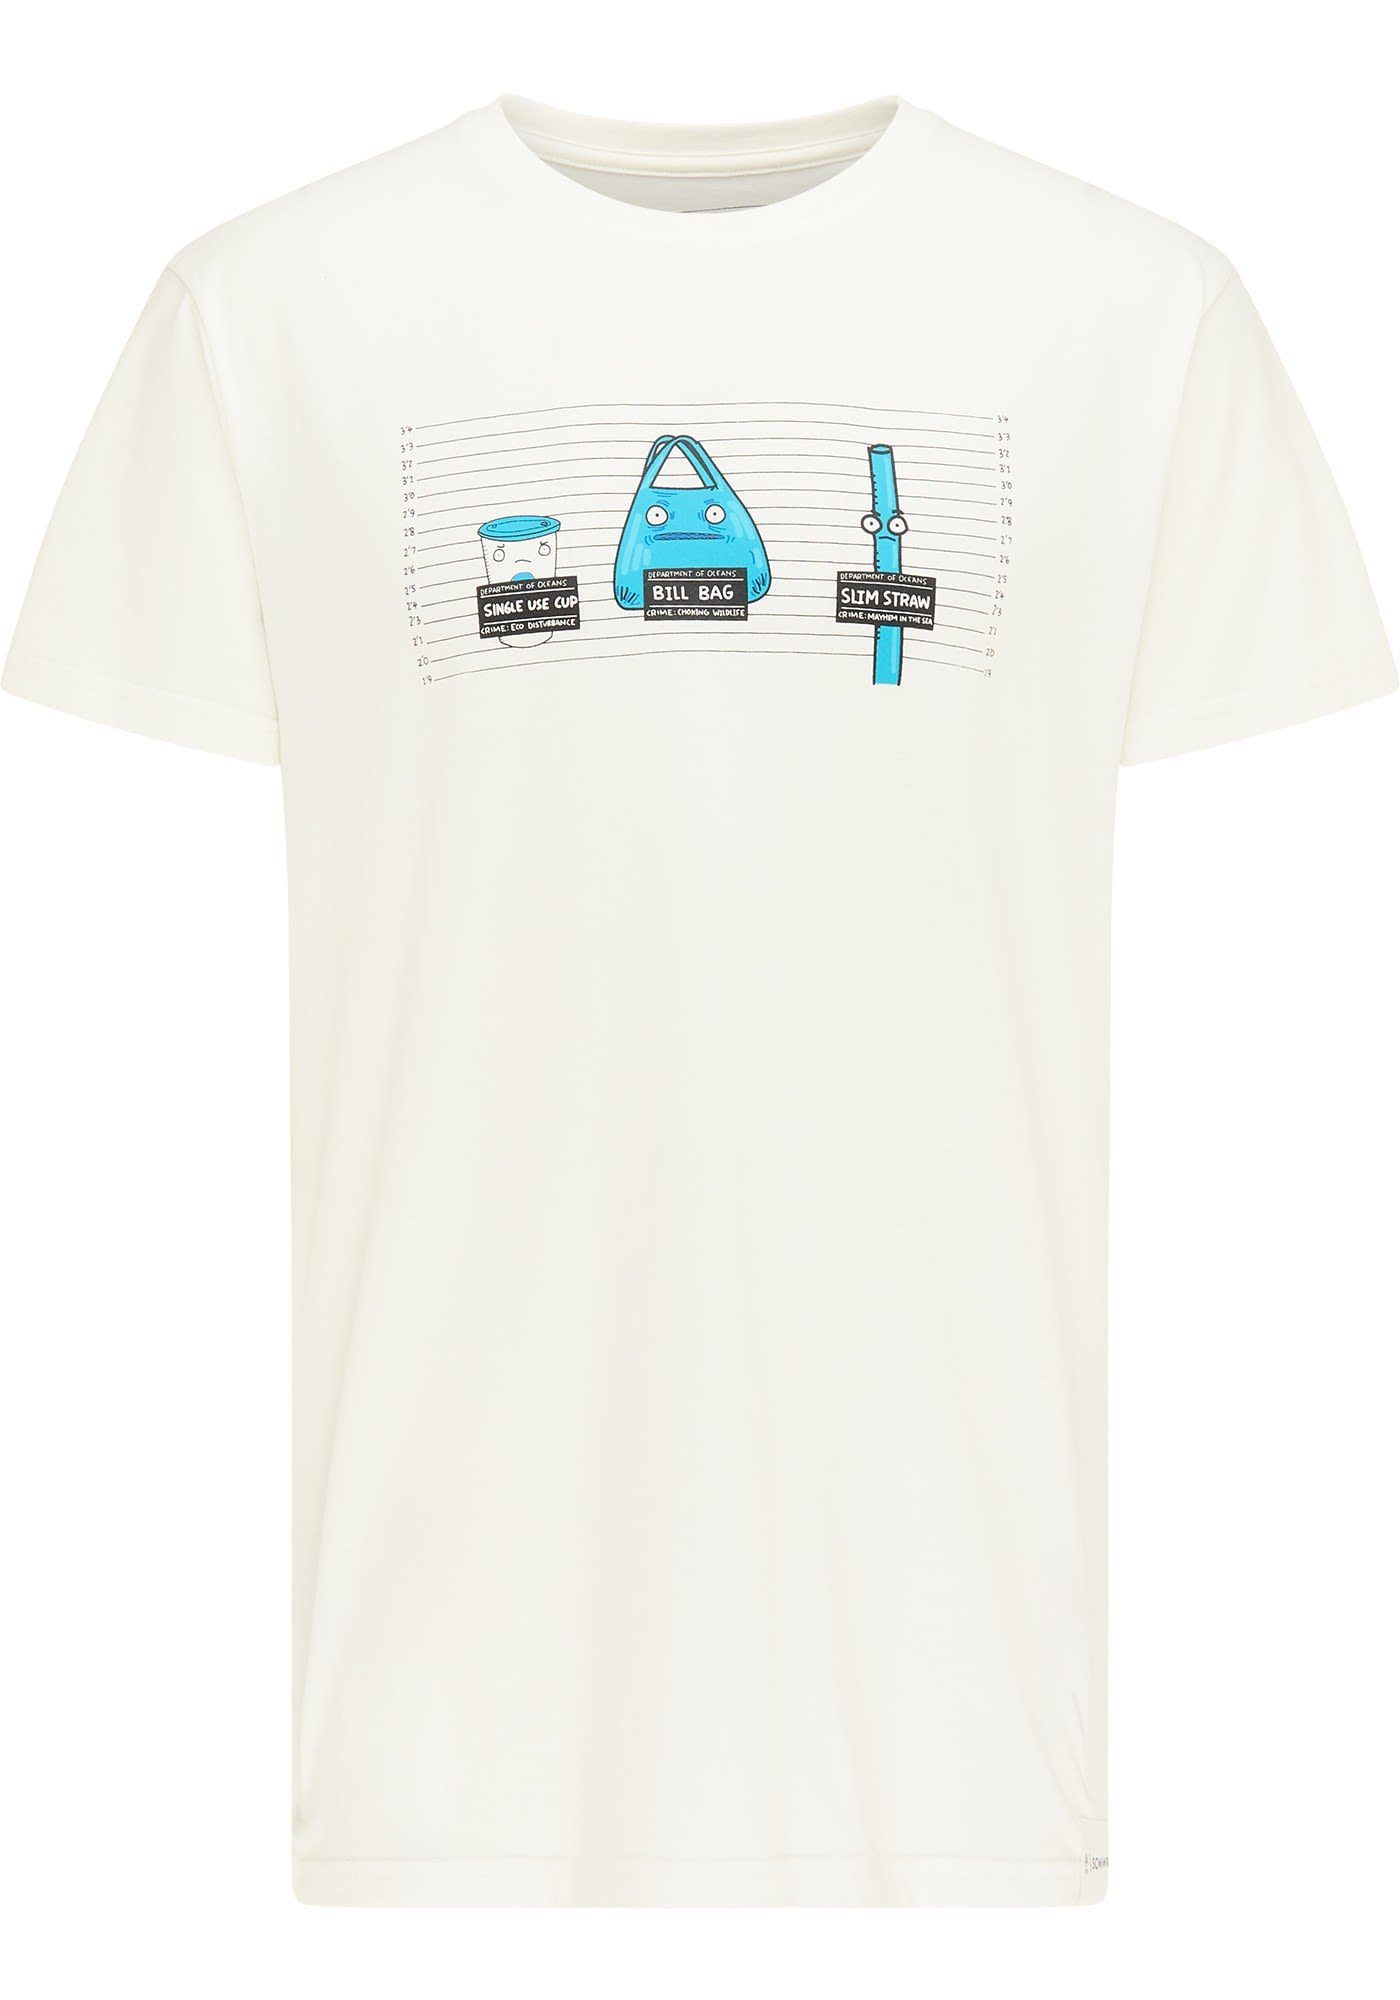 Bag W Tee SOMWR Bill Somwr T-Shirt Kurzarm-Shirt Damen Fugitive